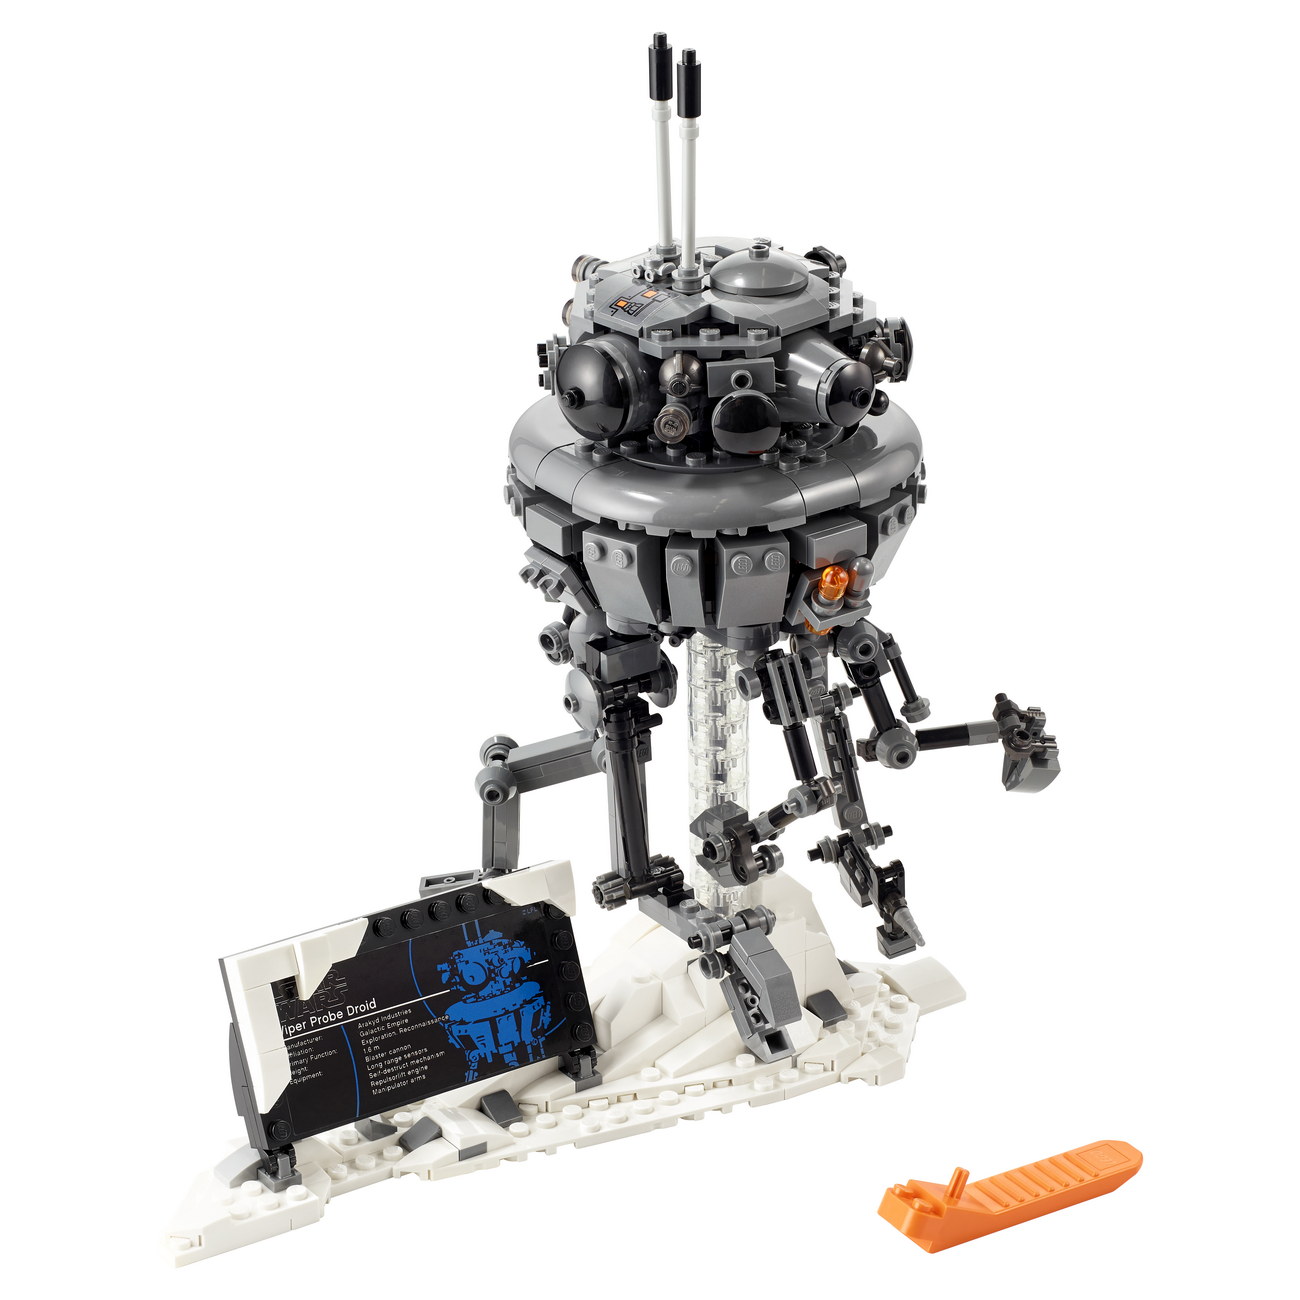 LEGO Star Wars 75306 - Imperialer Suchdroide